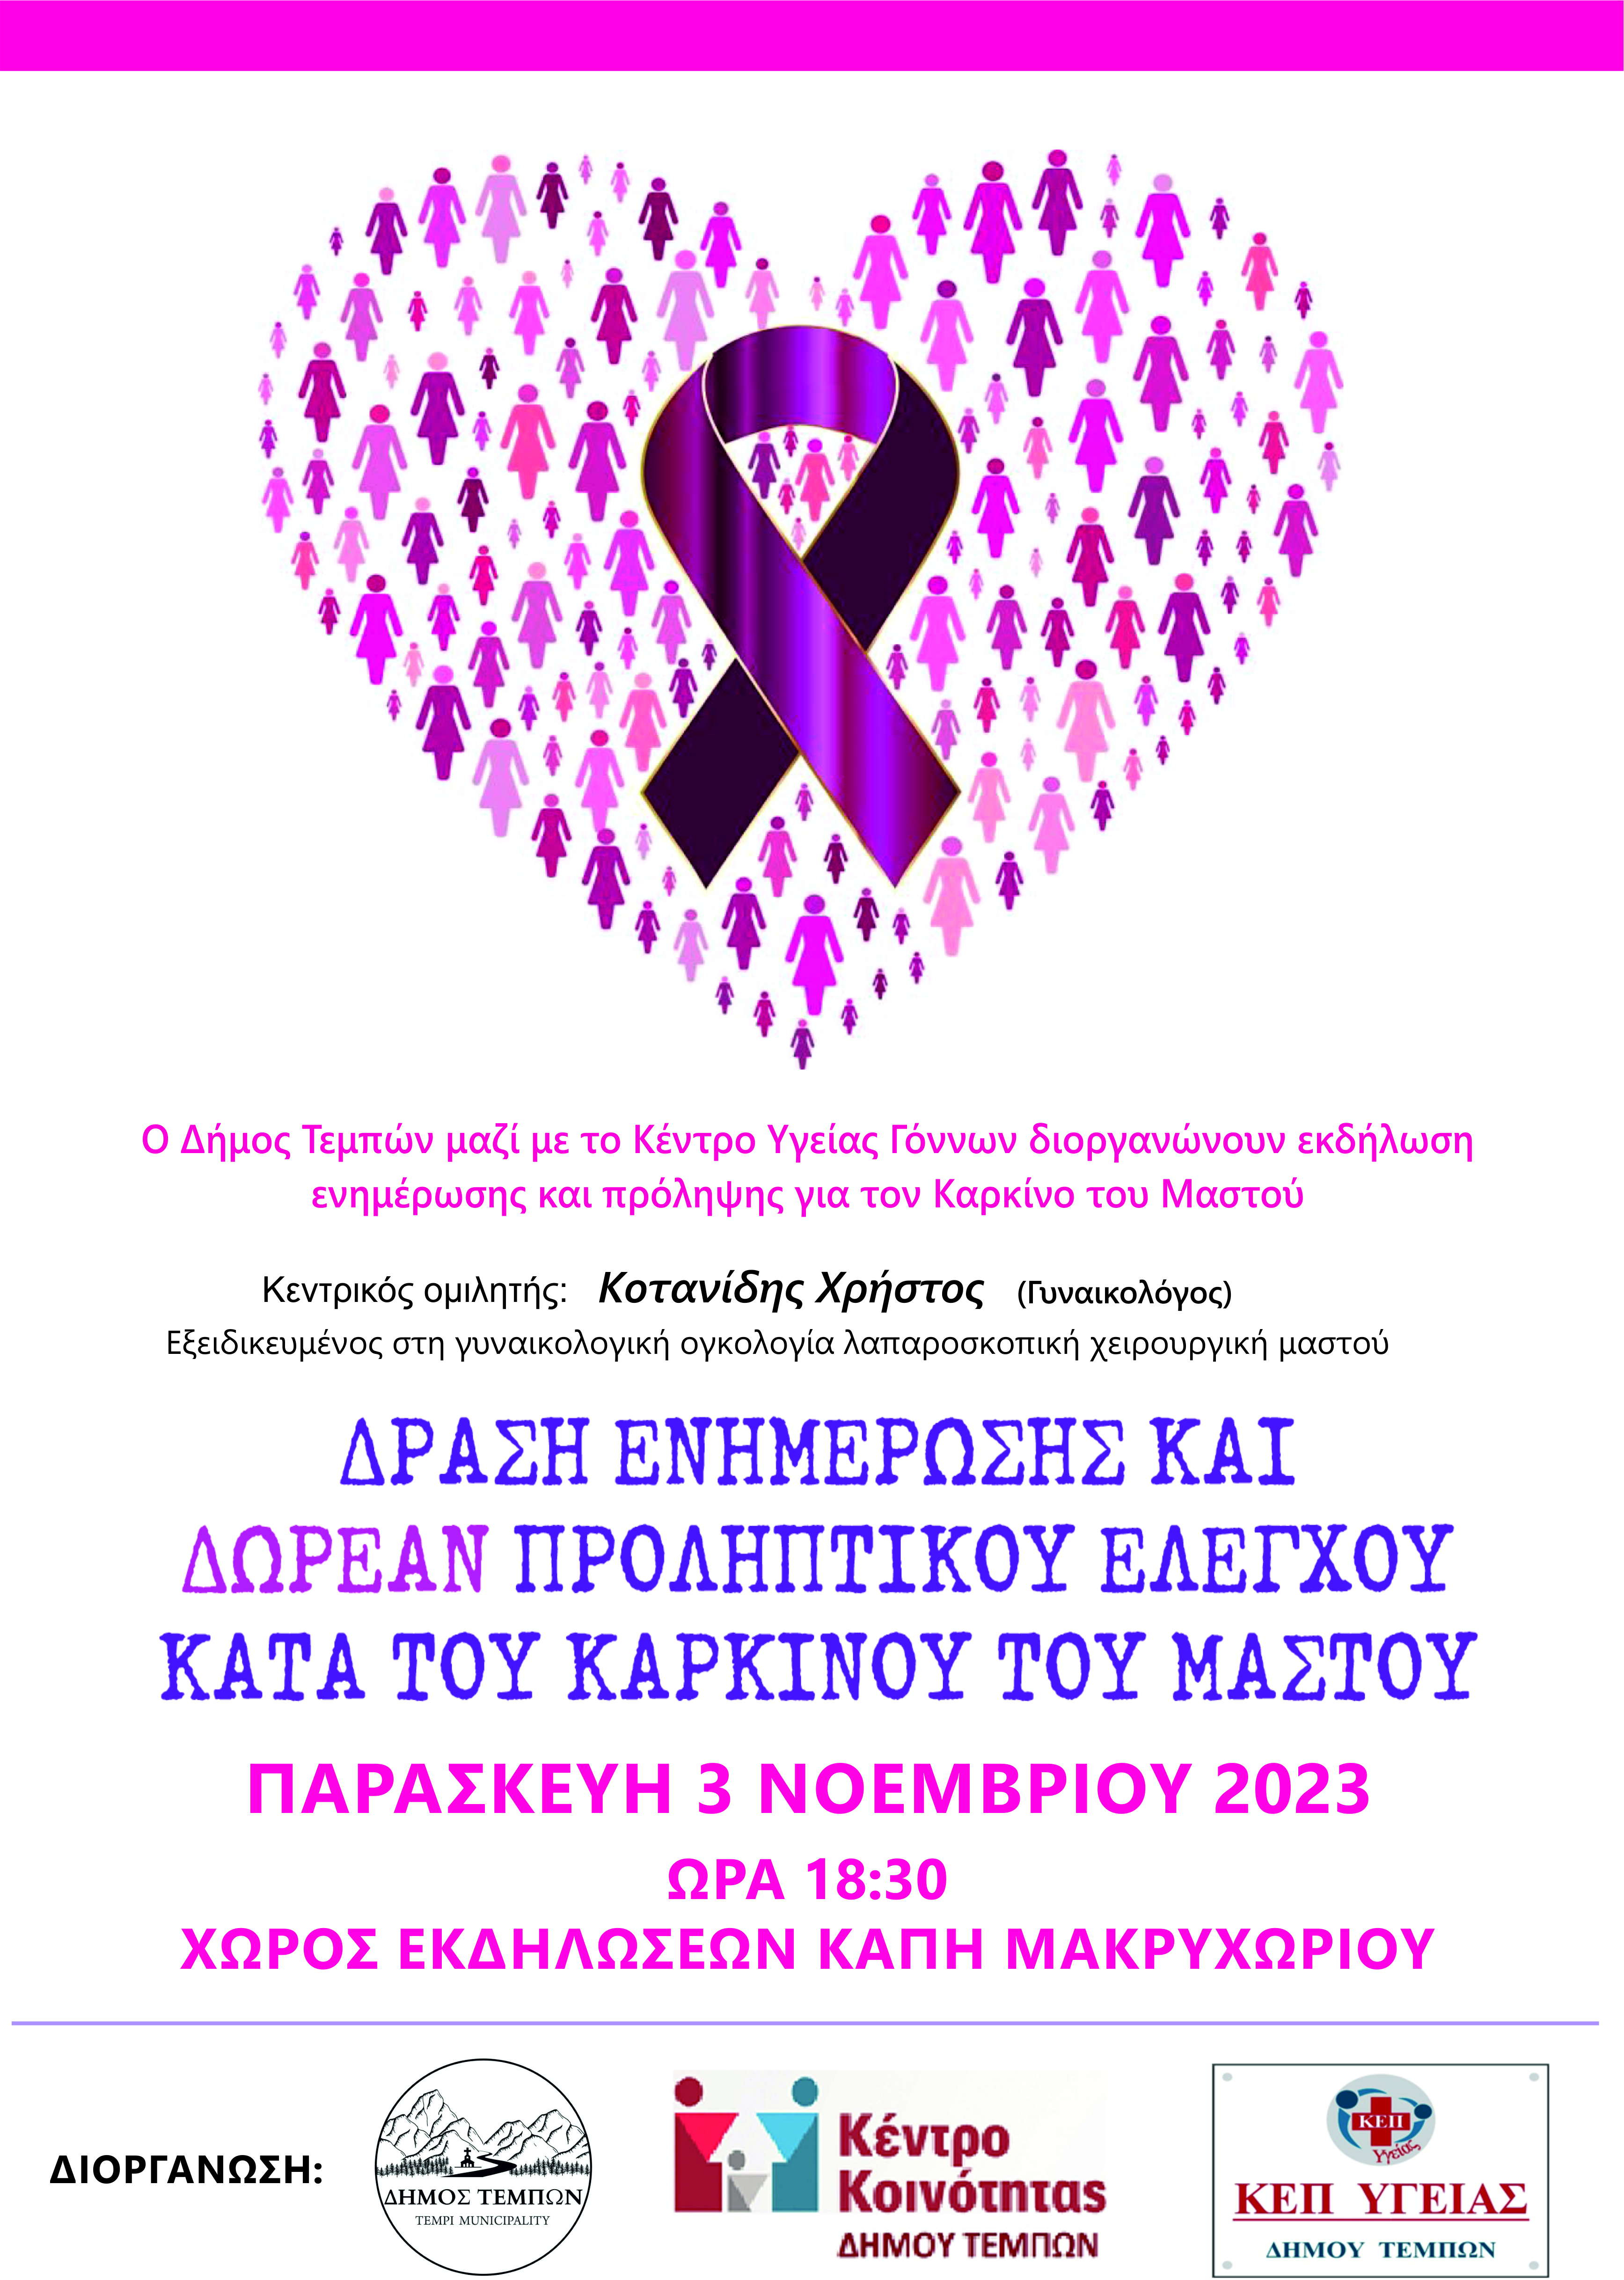 Δήμος Τεμπών: Εκδήλωση πρόληψης και ενημέρωσης για τον καρκίνο του μαστού